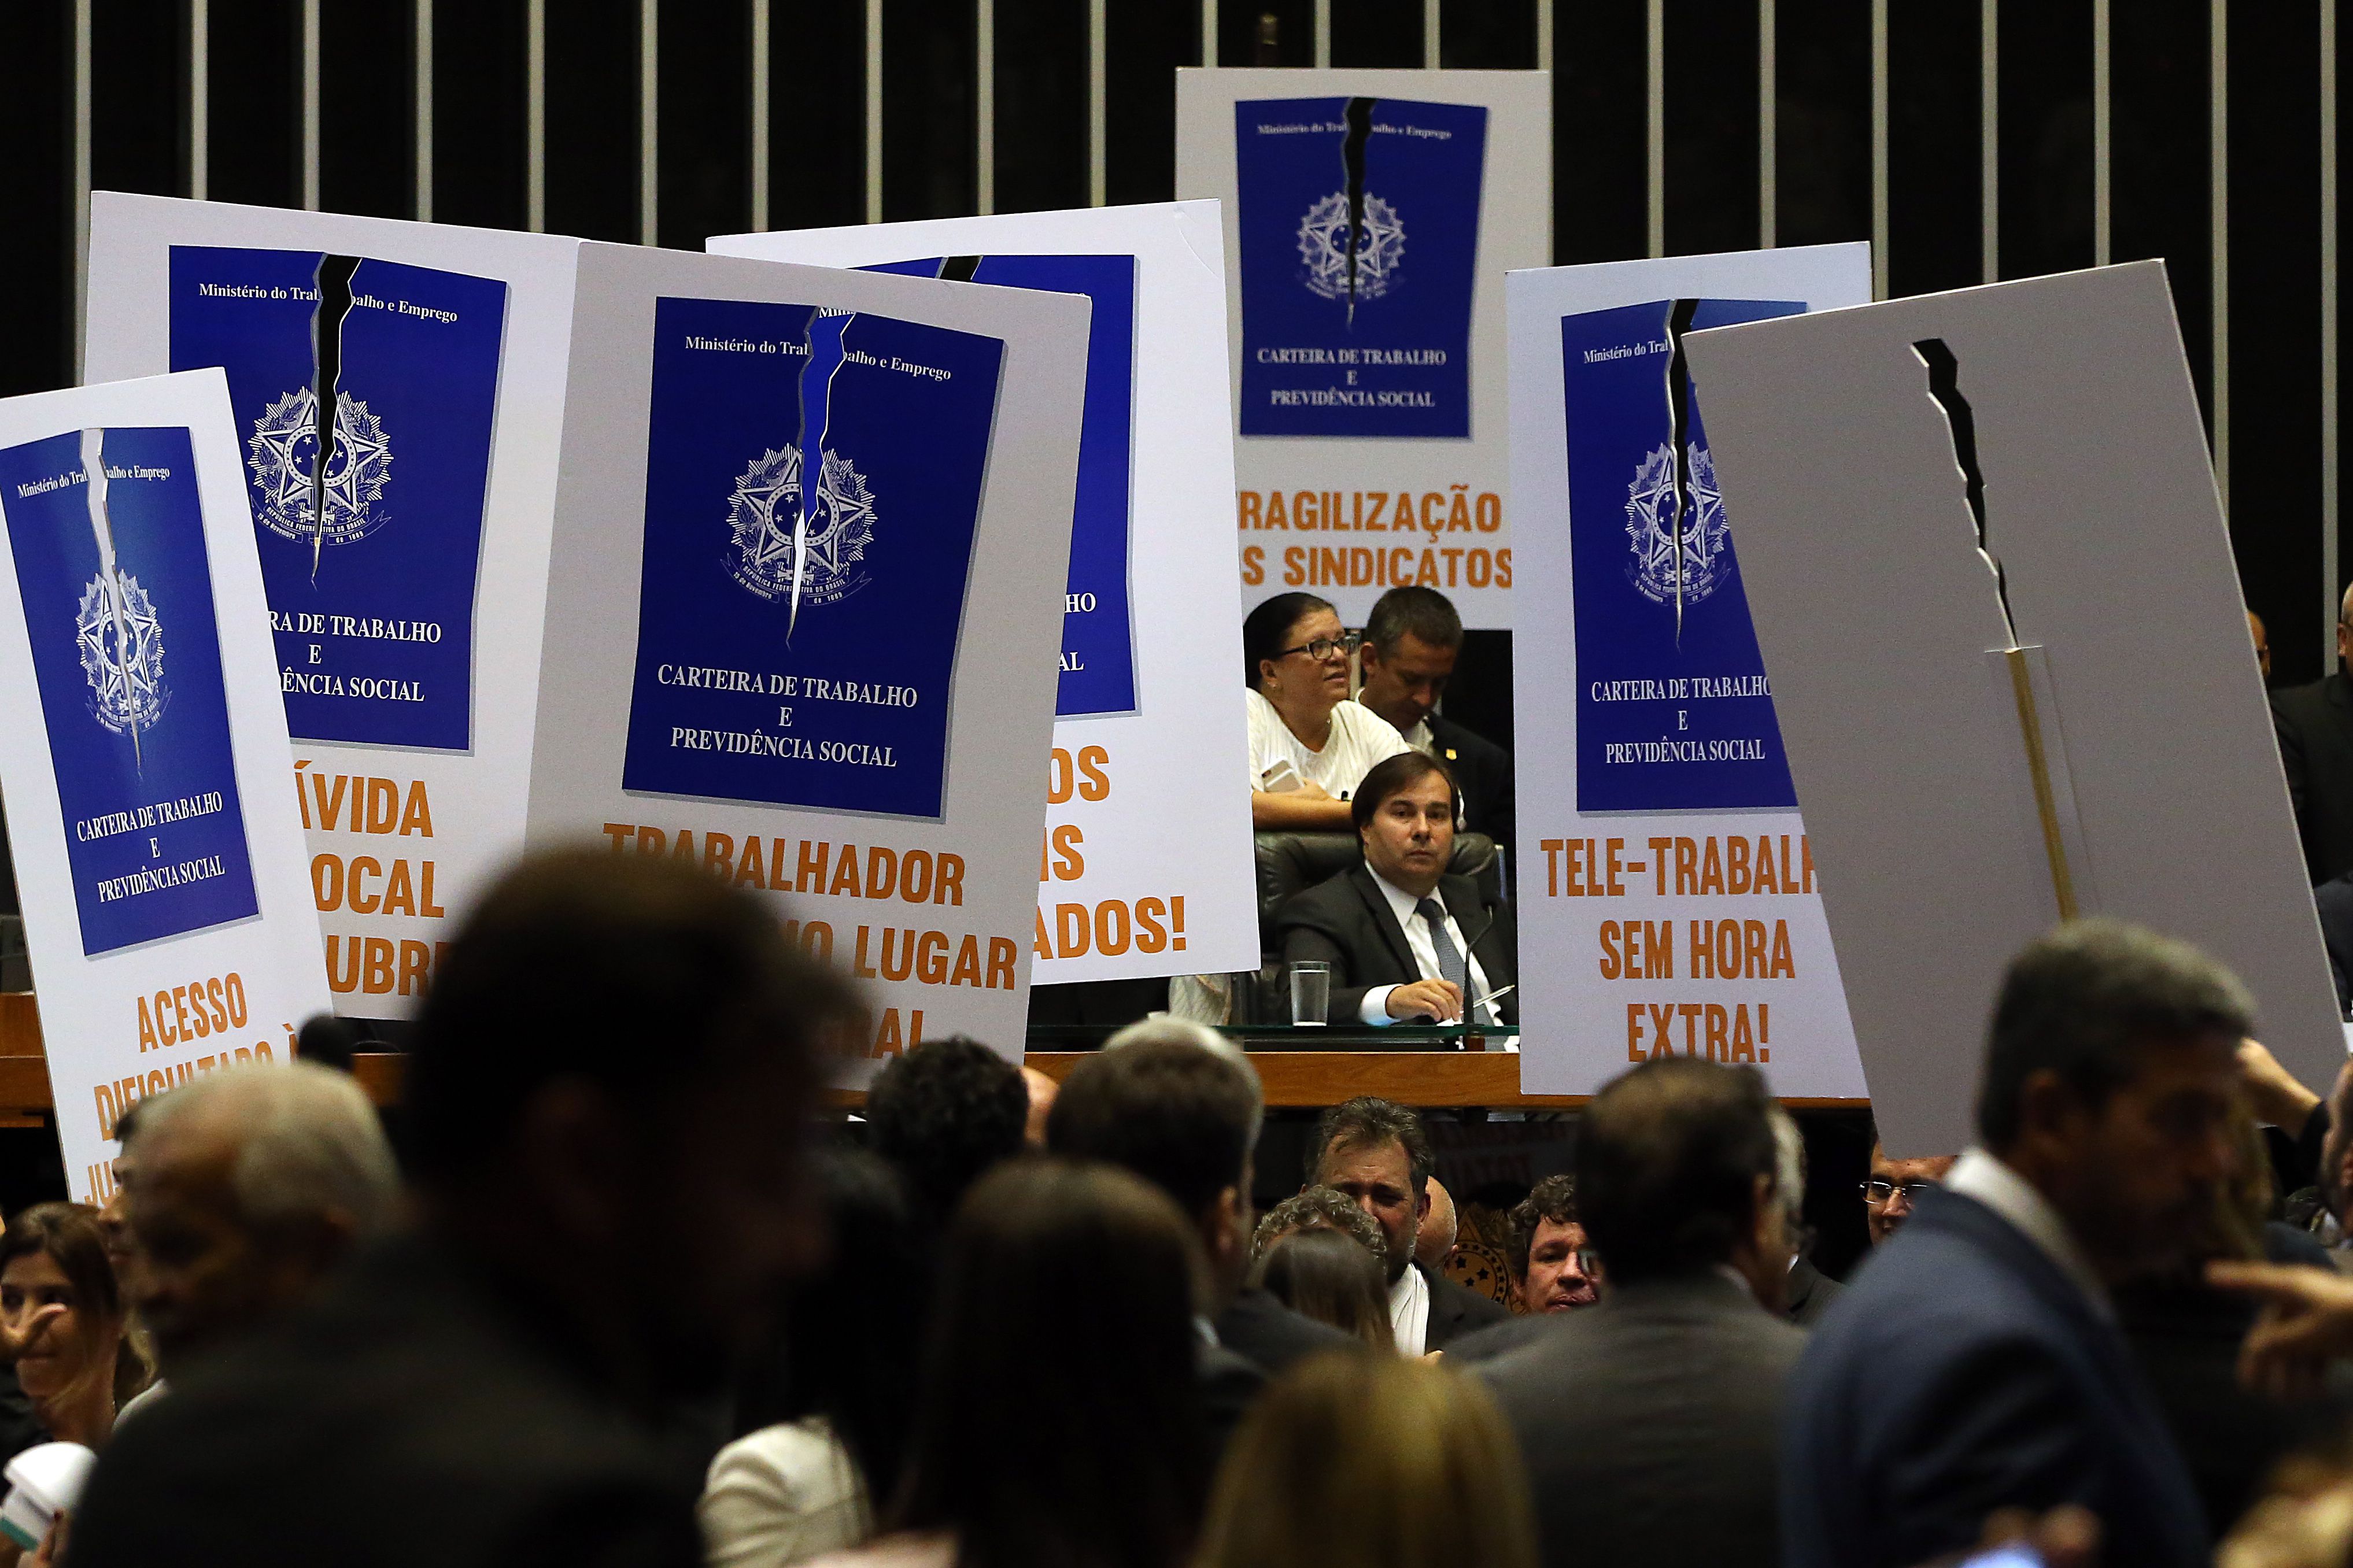 26/04/2017- Brasília- DF, Brasil- Deputados de partidos de oposição ao governo tentam adiar a votação em plenário do projeto de lei (6787/16), que trata da reforma trabalhista
Foto: Antonio Cruz/Agência Brasil